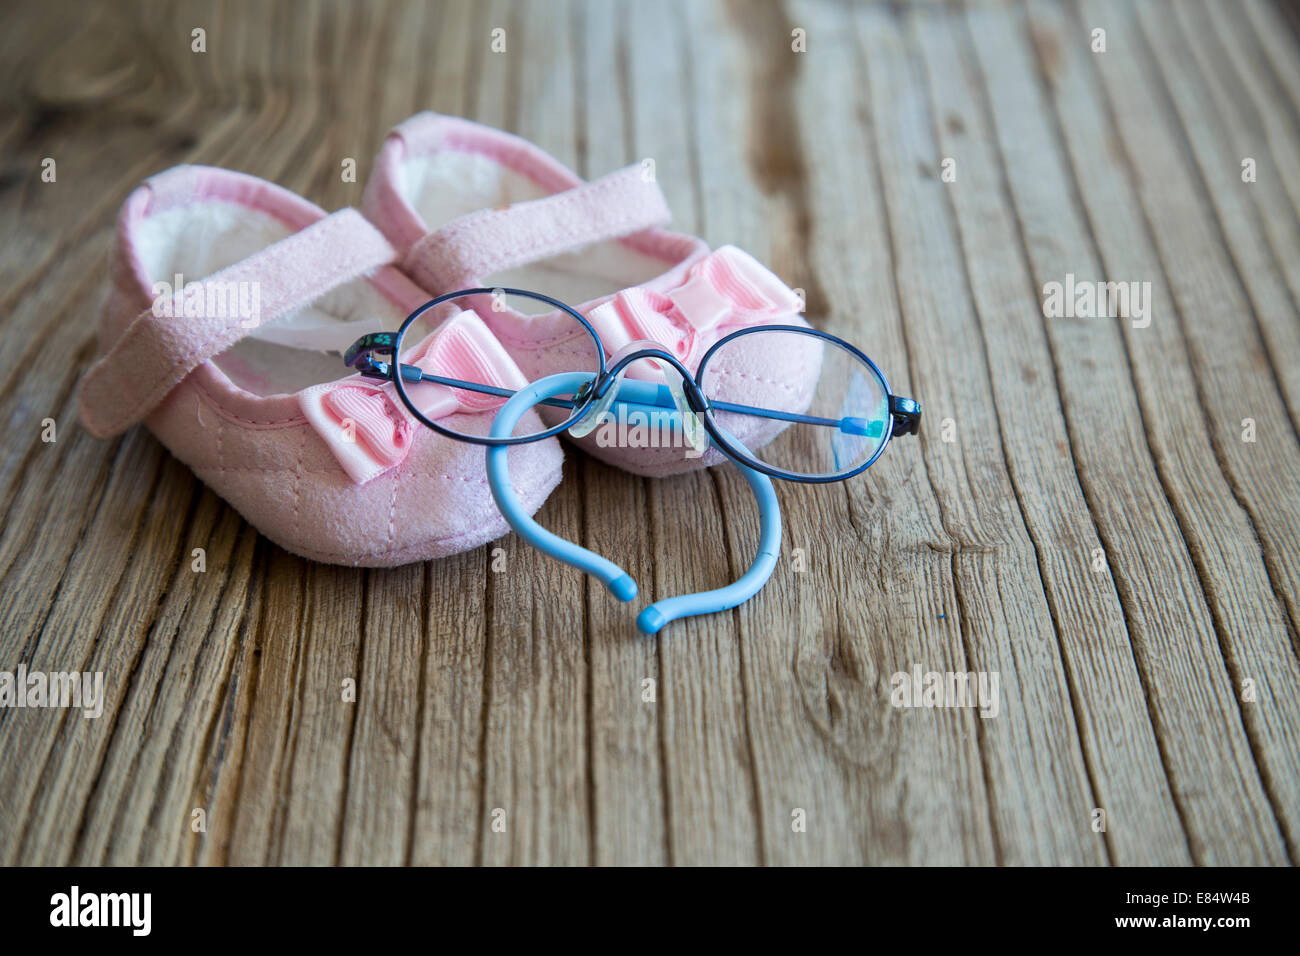 Dolce rosa scarpe da bambino e bicchieri in background in legno Foto Stock